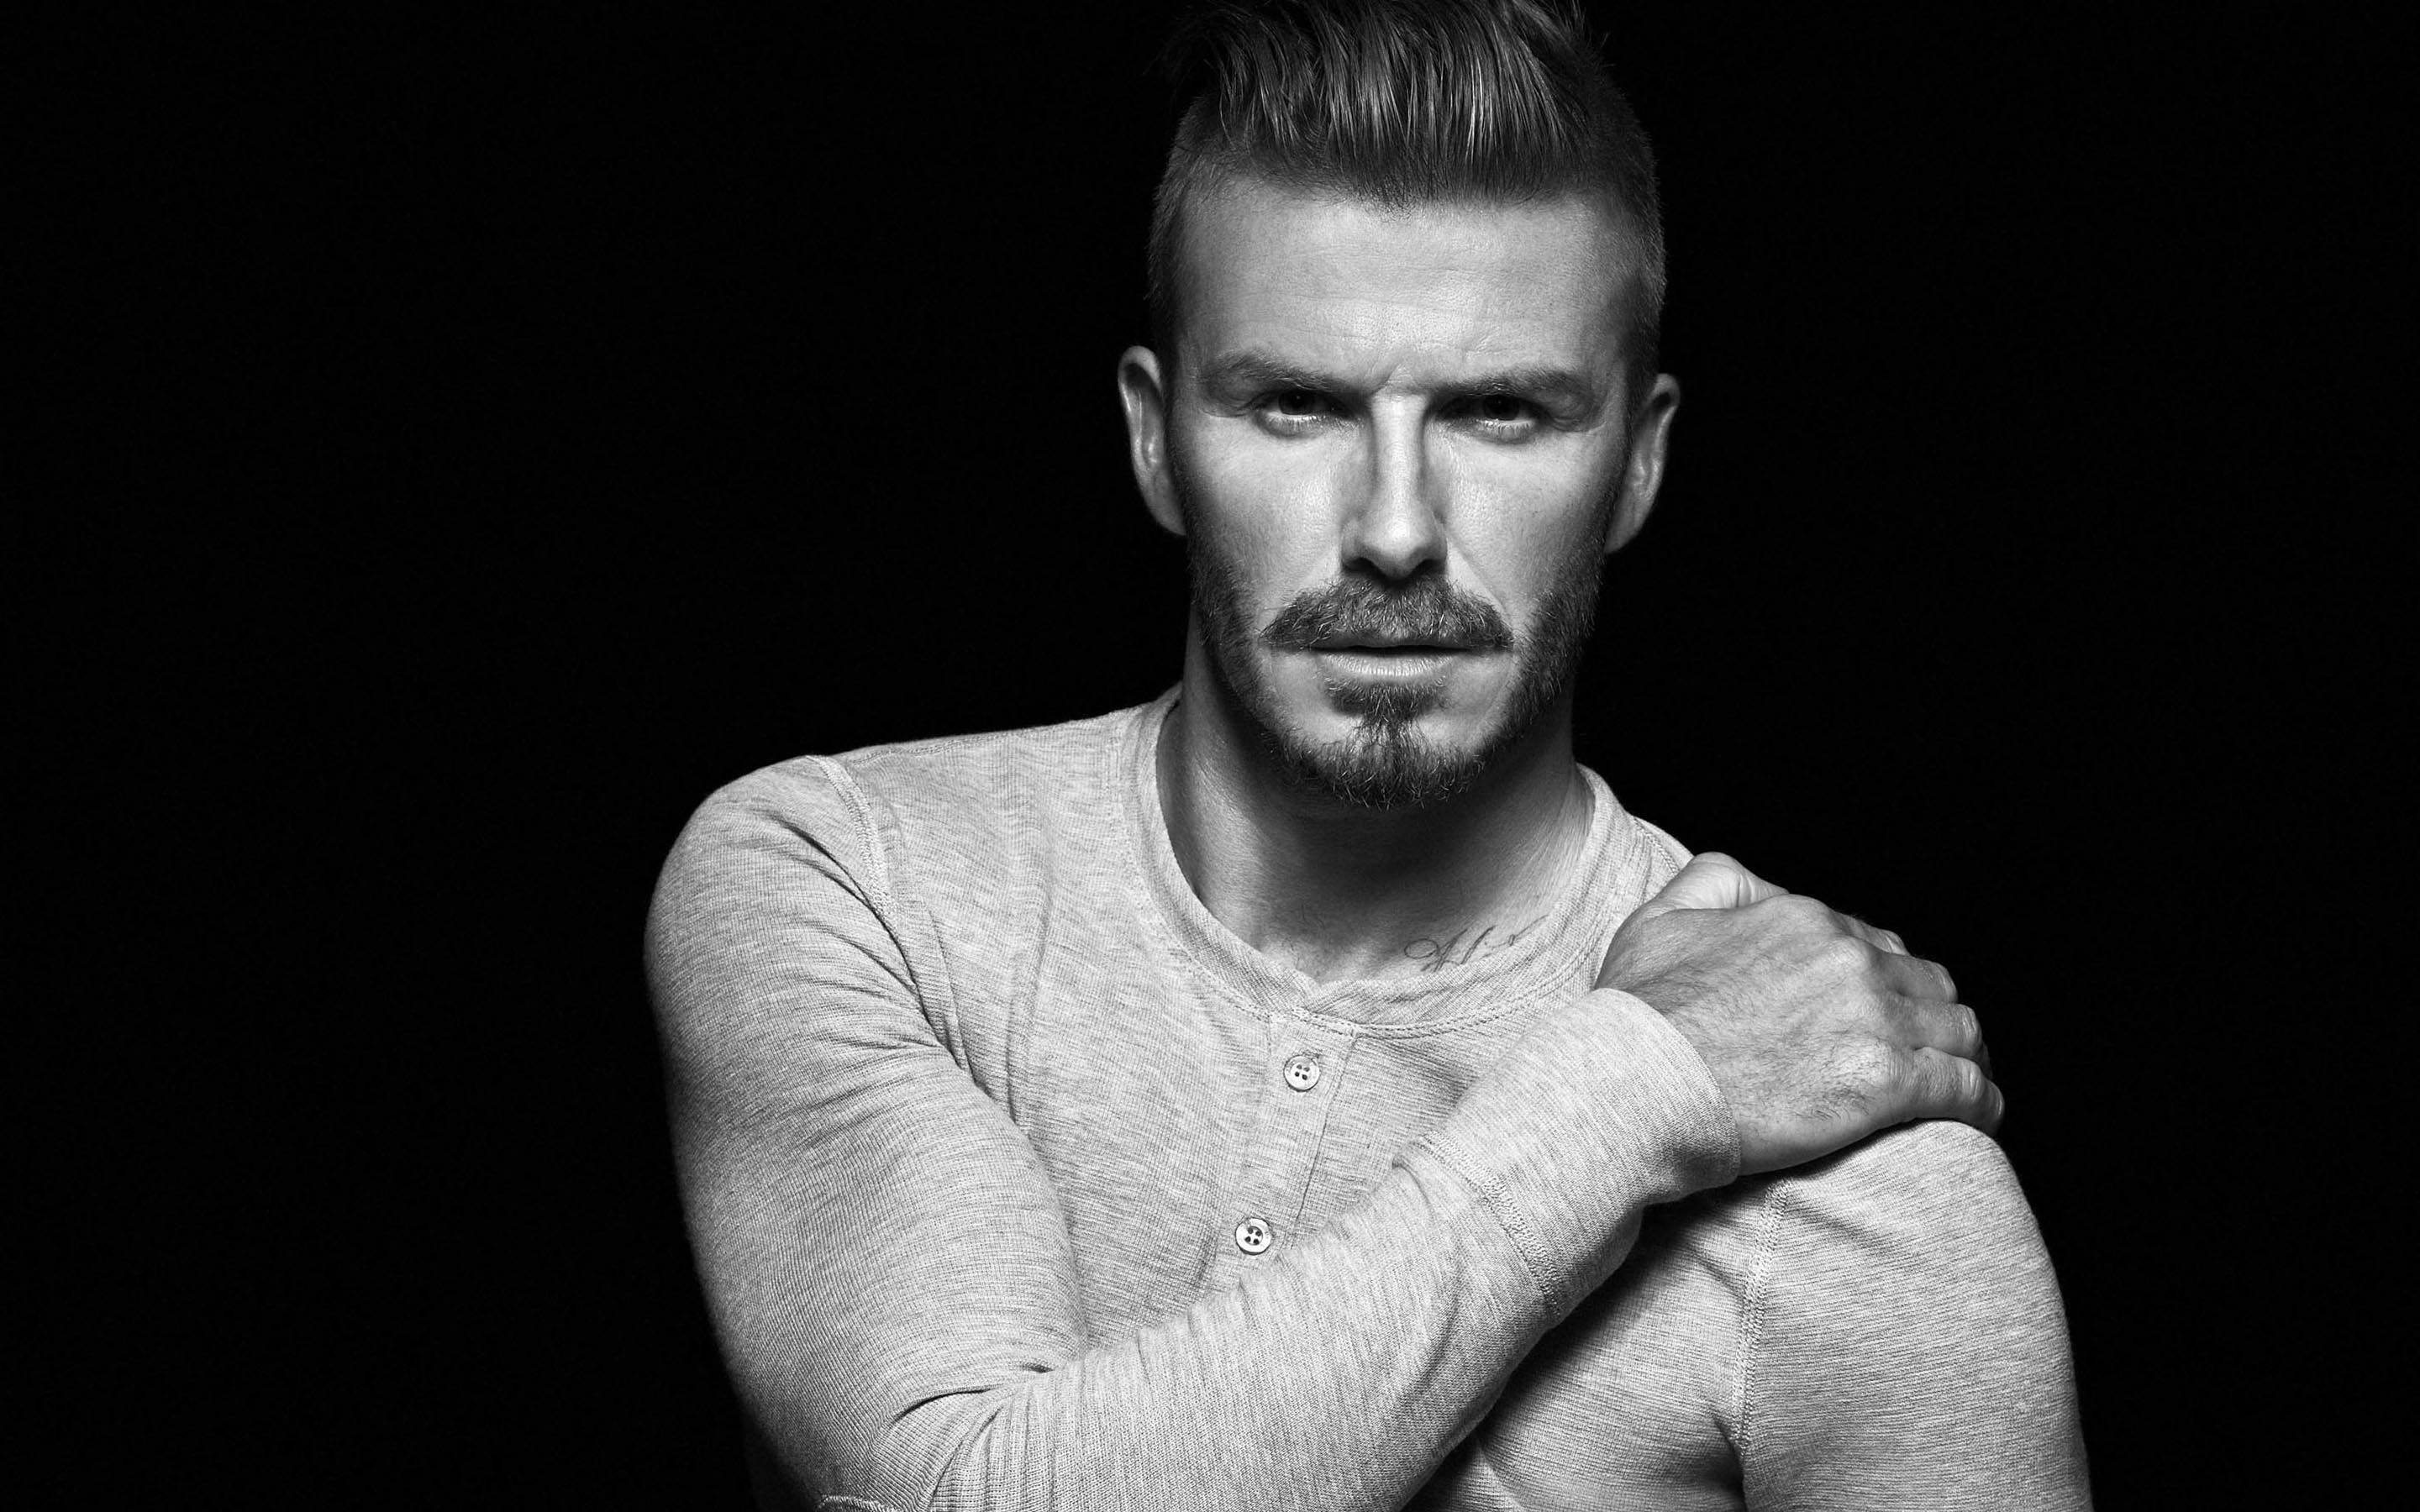 David Beckham Wallpaper High Definition Quality